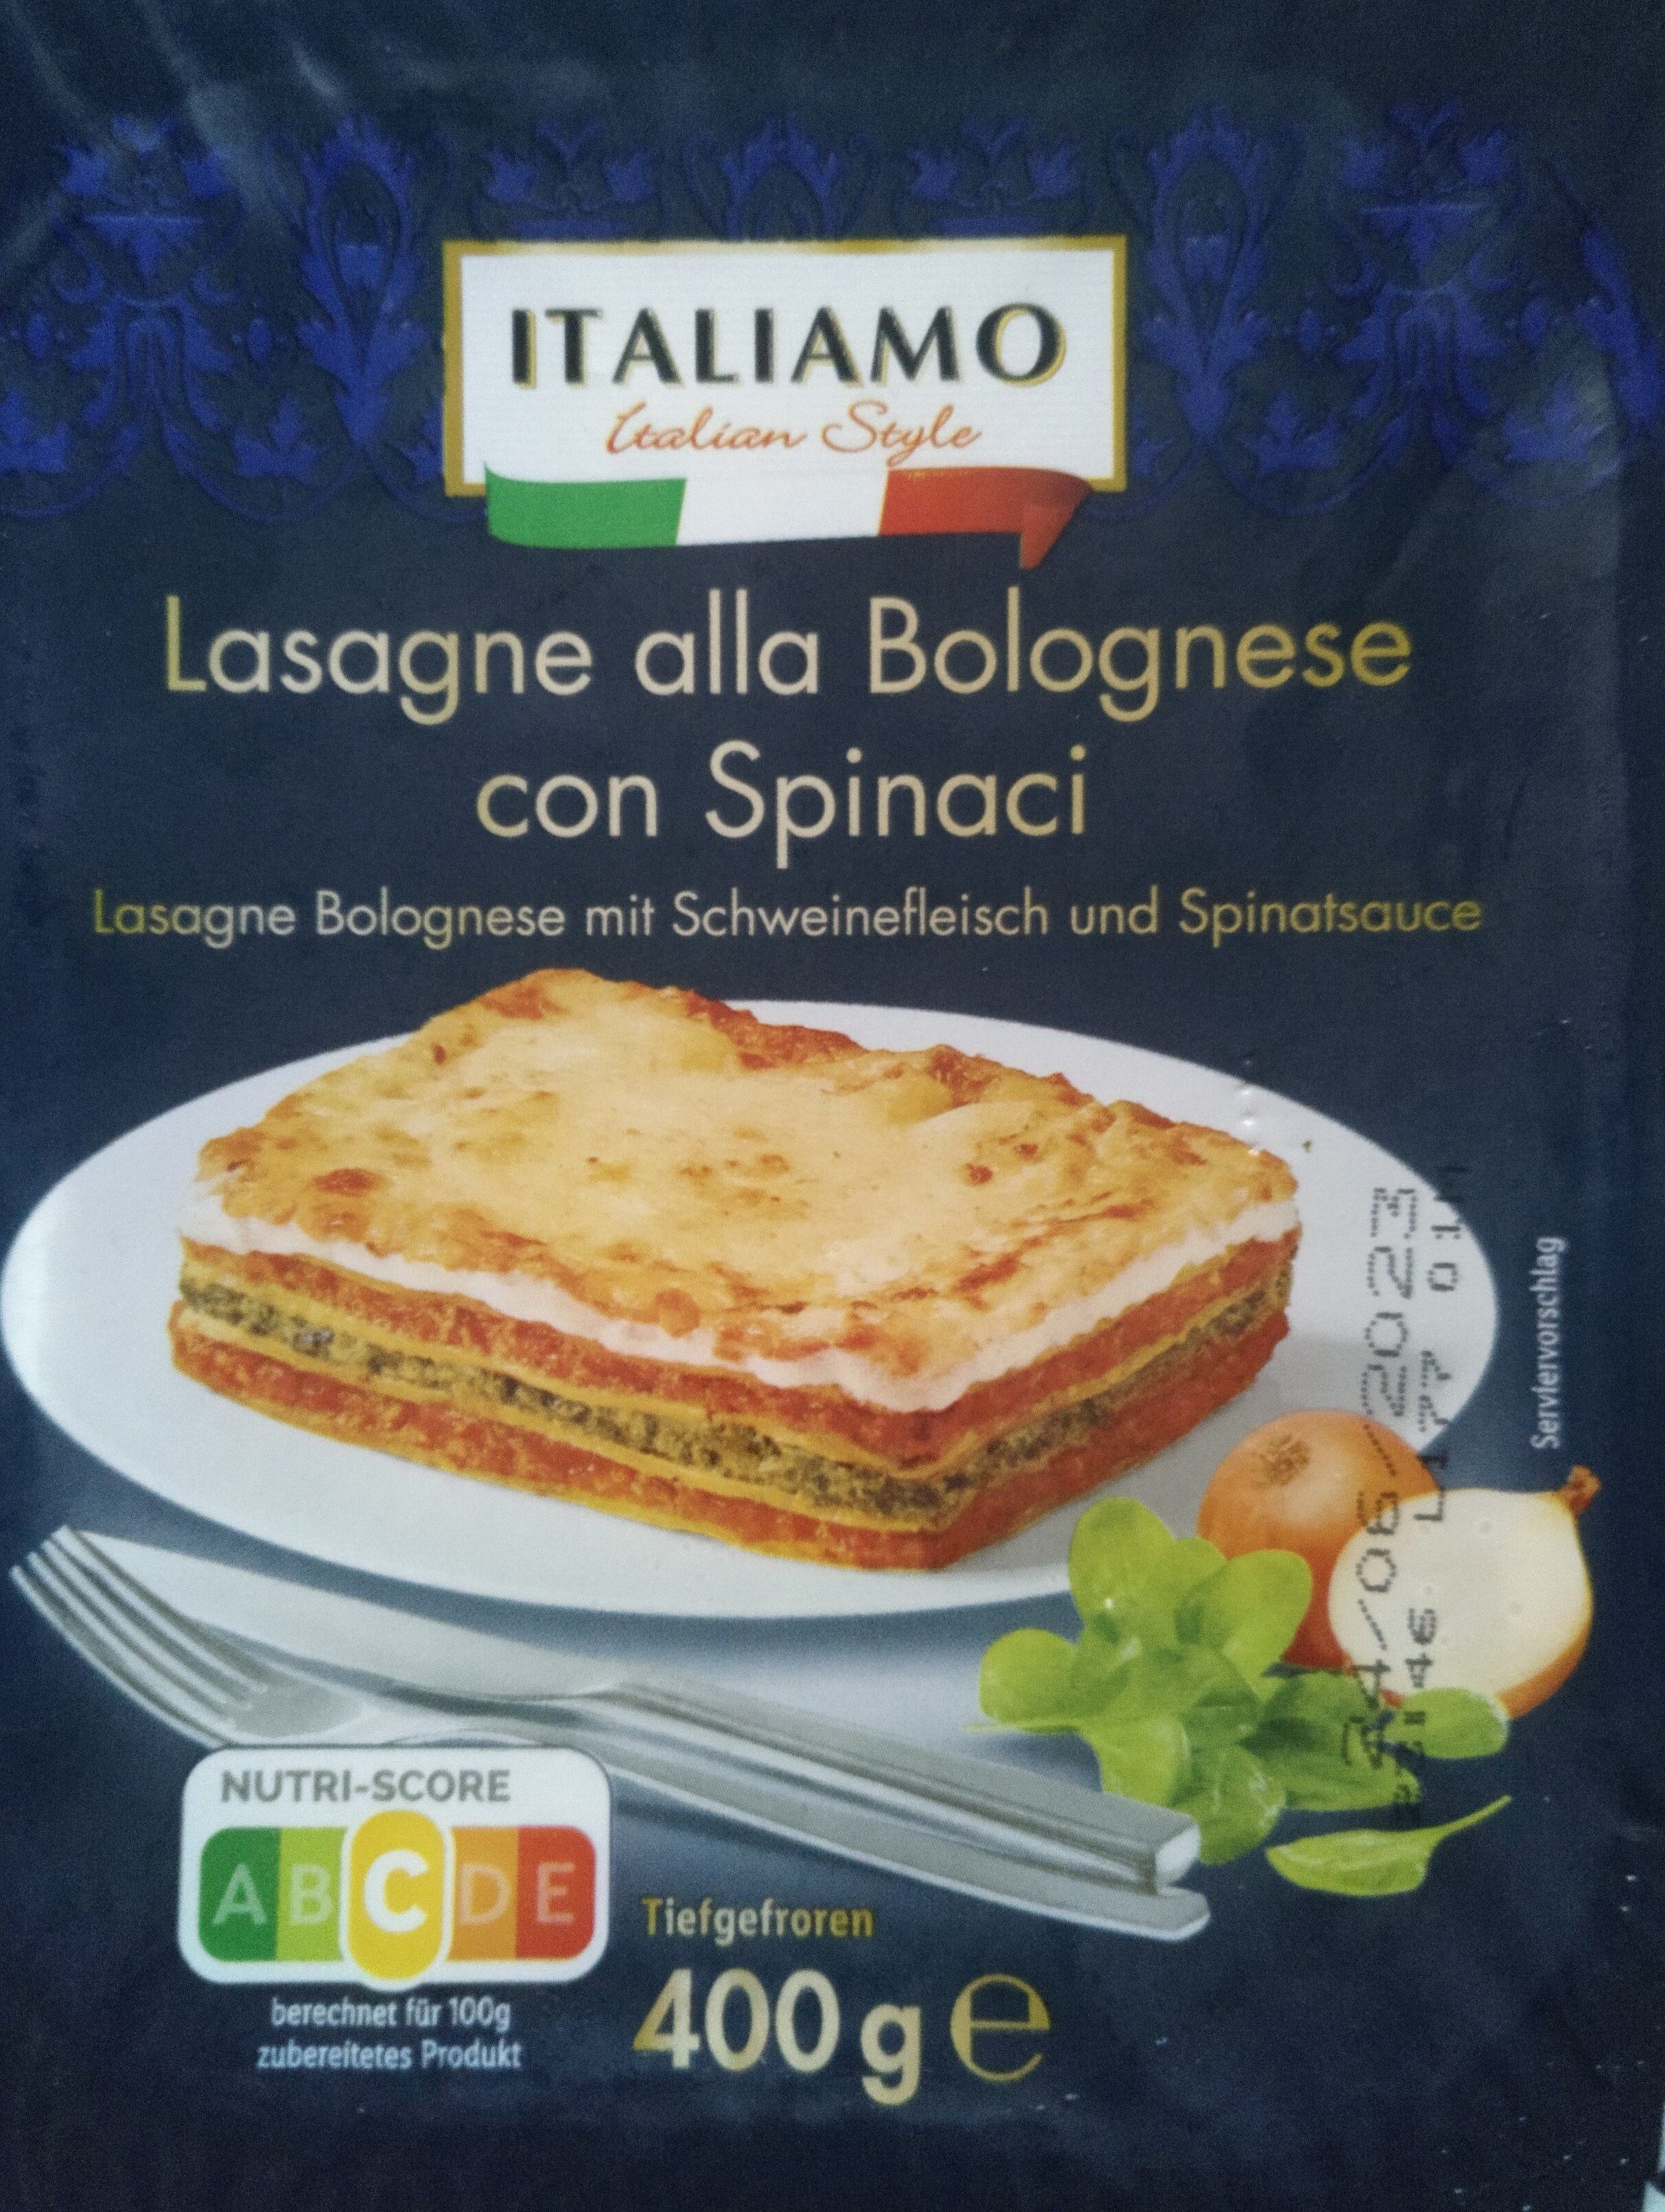 Lasagne alla Bolognese con Spinaci - Product - de